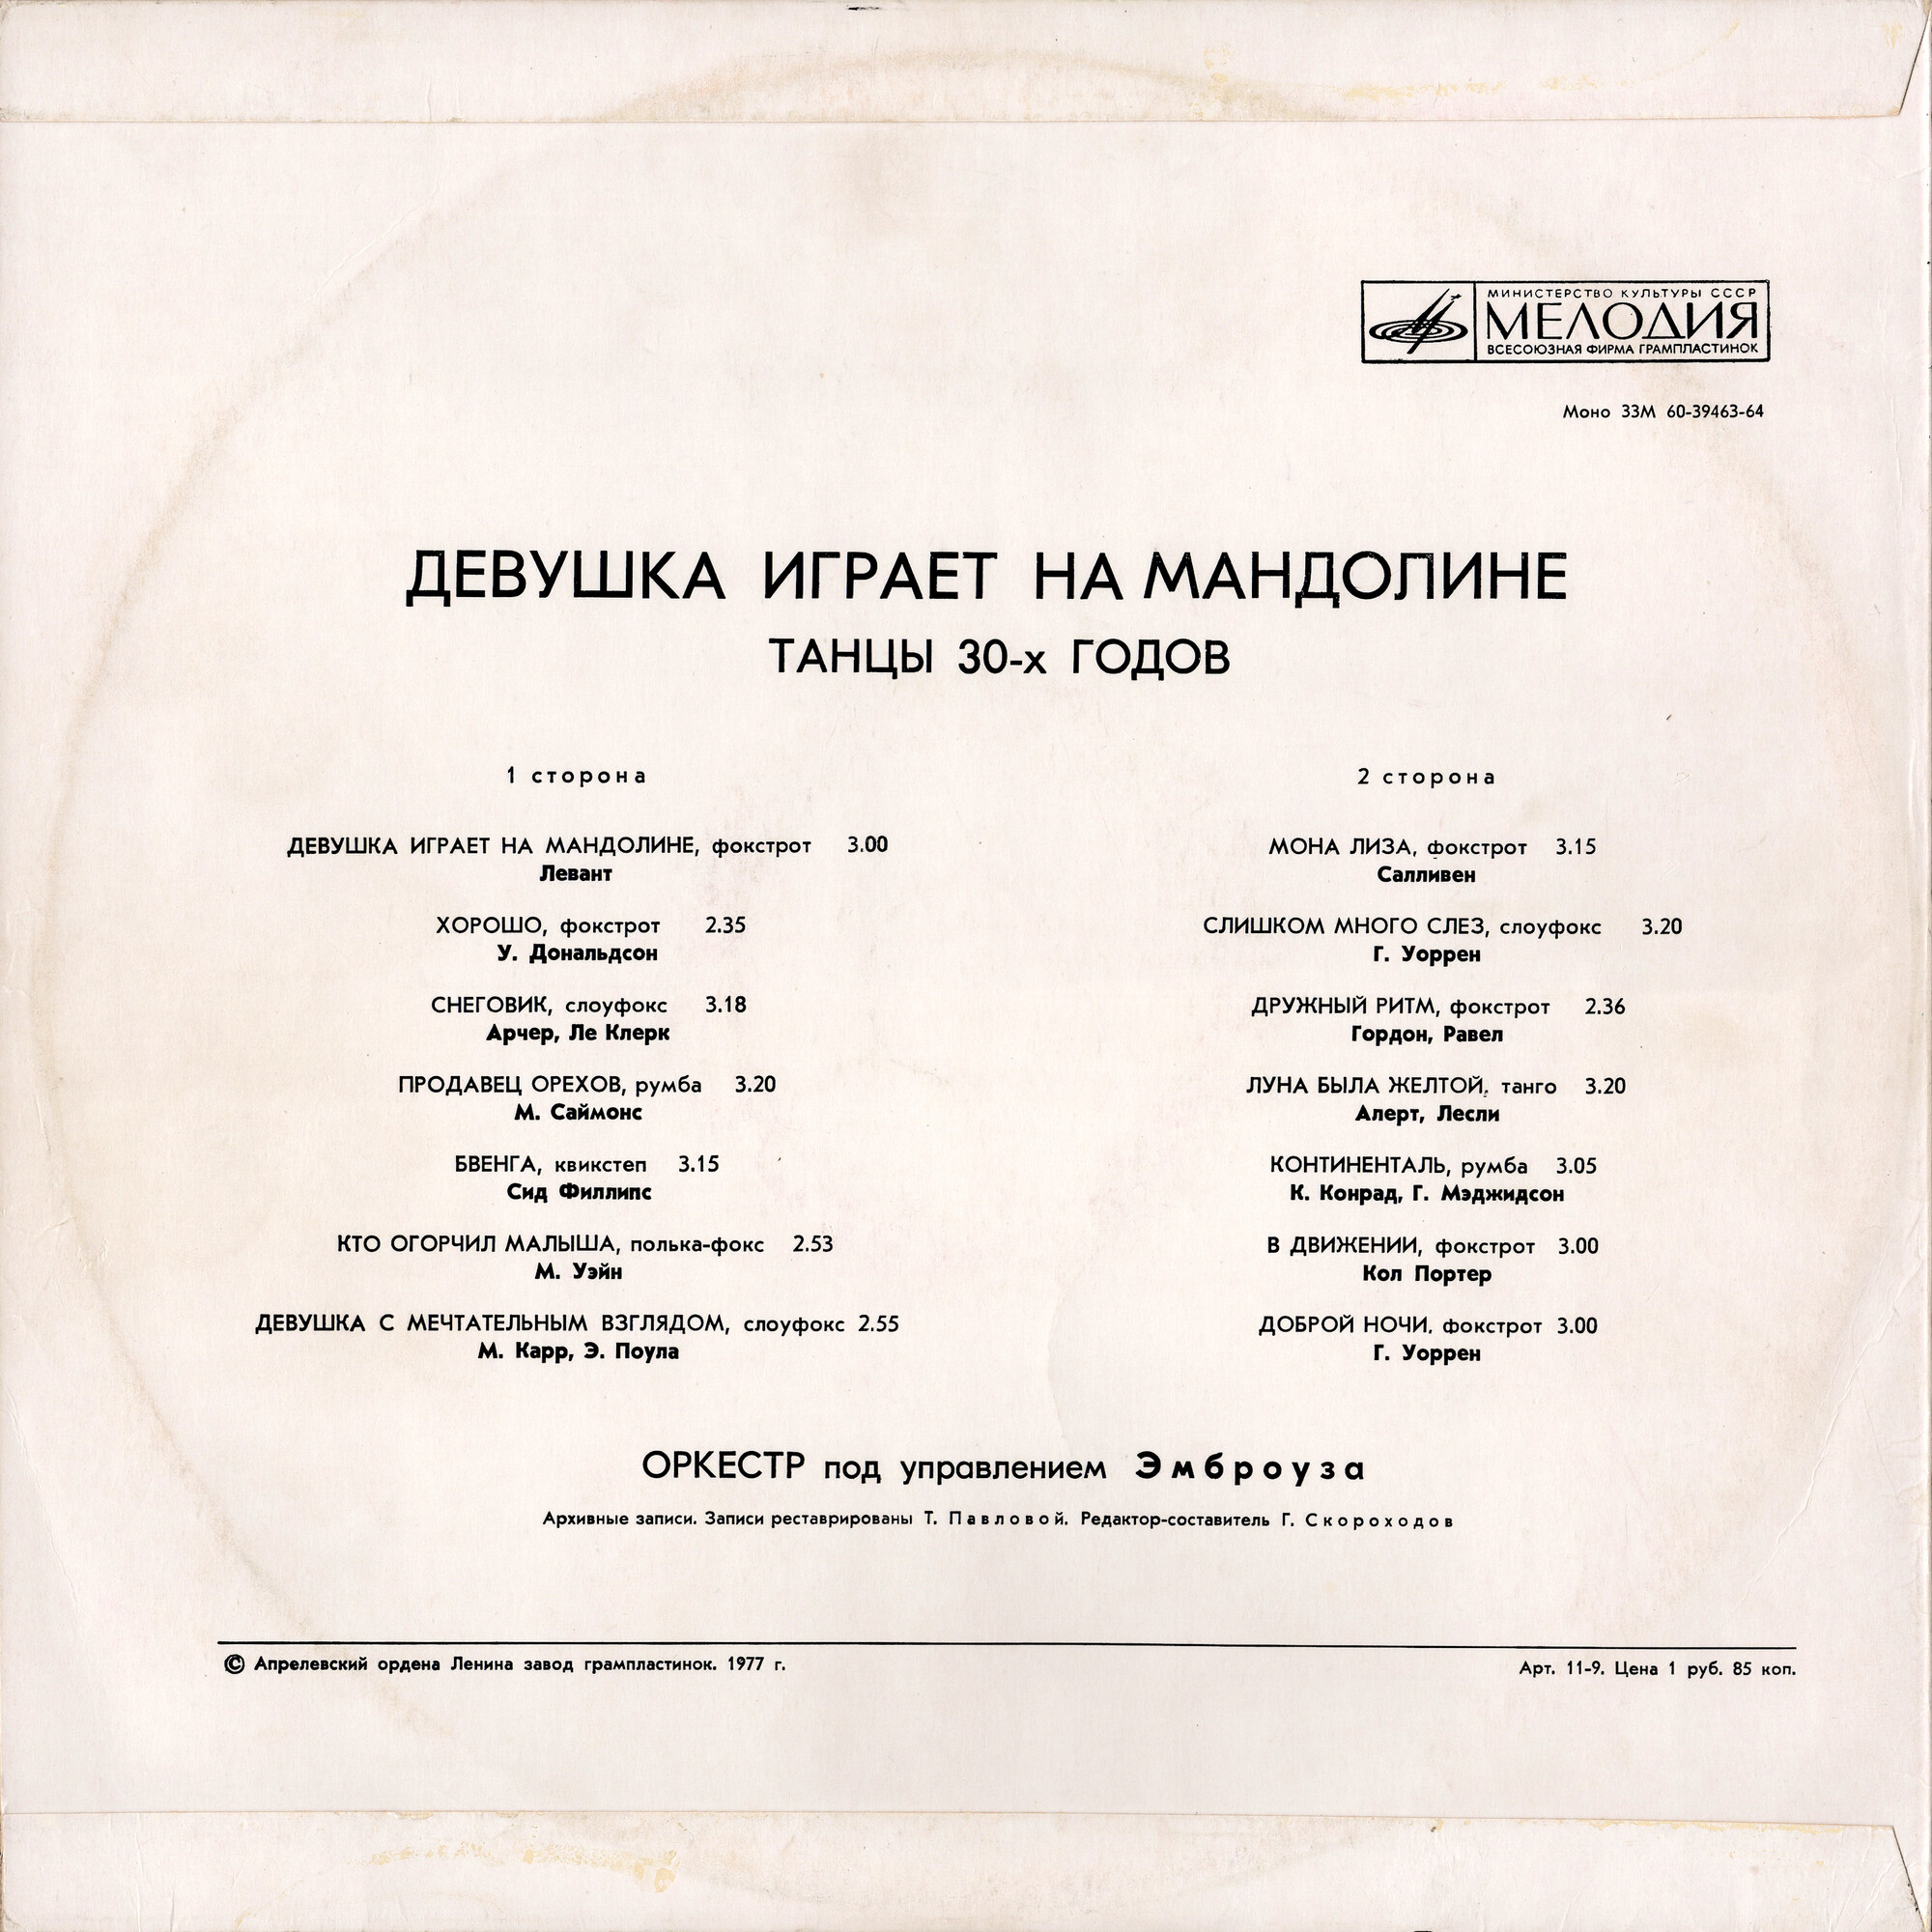 Оркестр п/у Эмброуза - Девушка играет на мандолине (танцы 30-х годов)